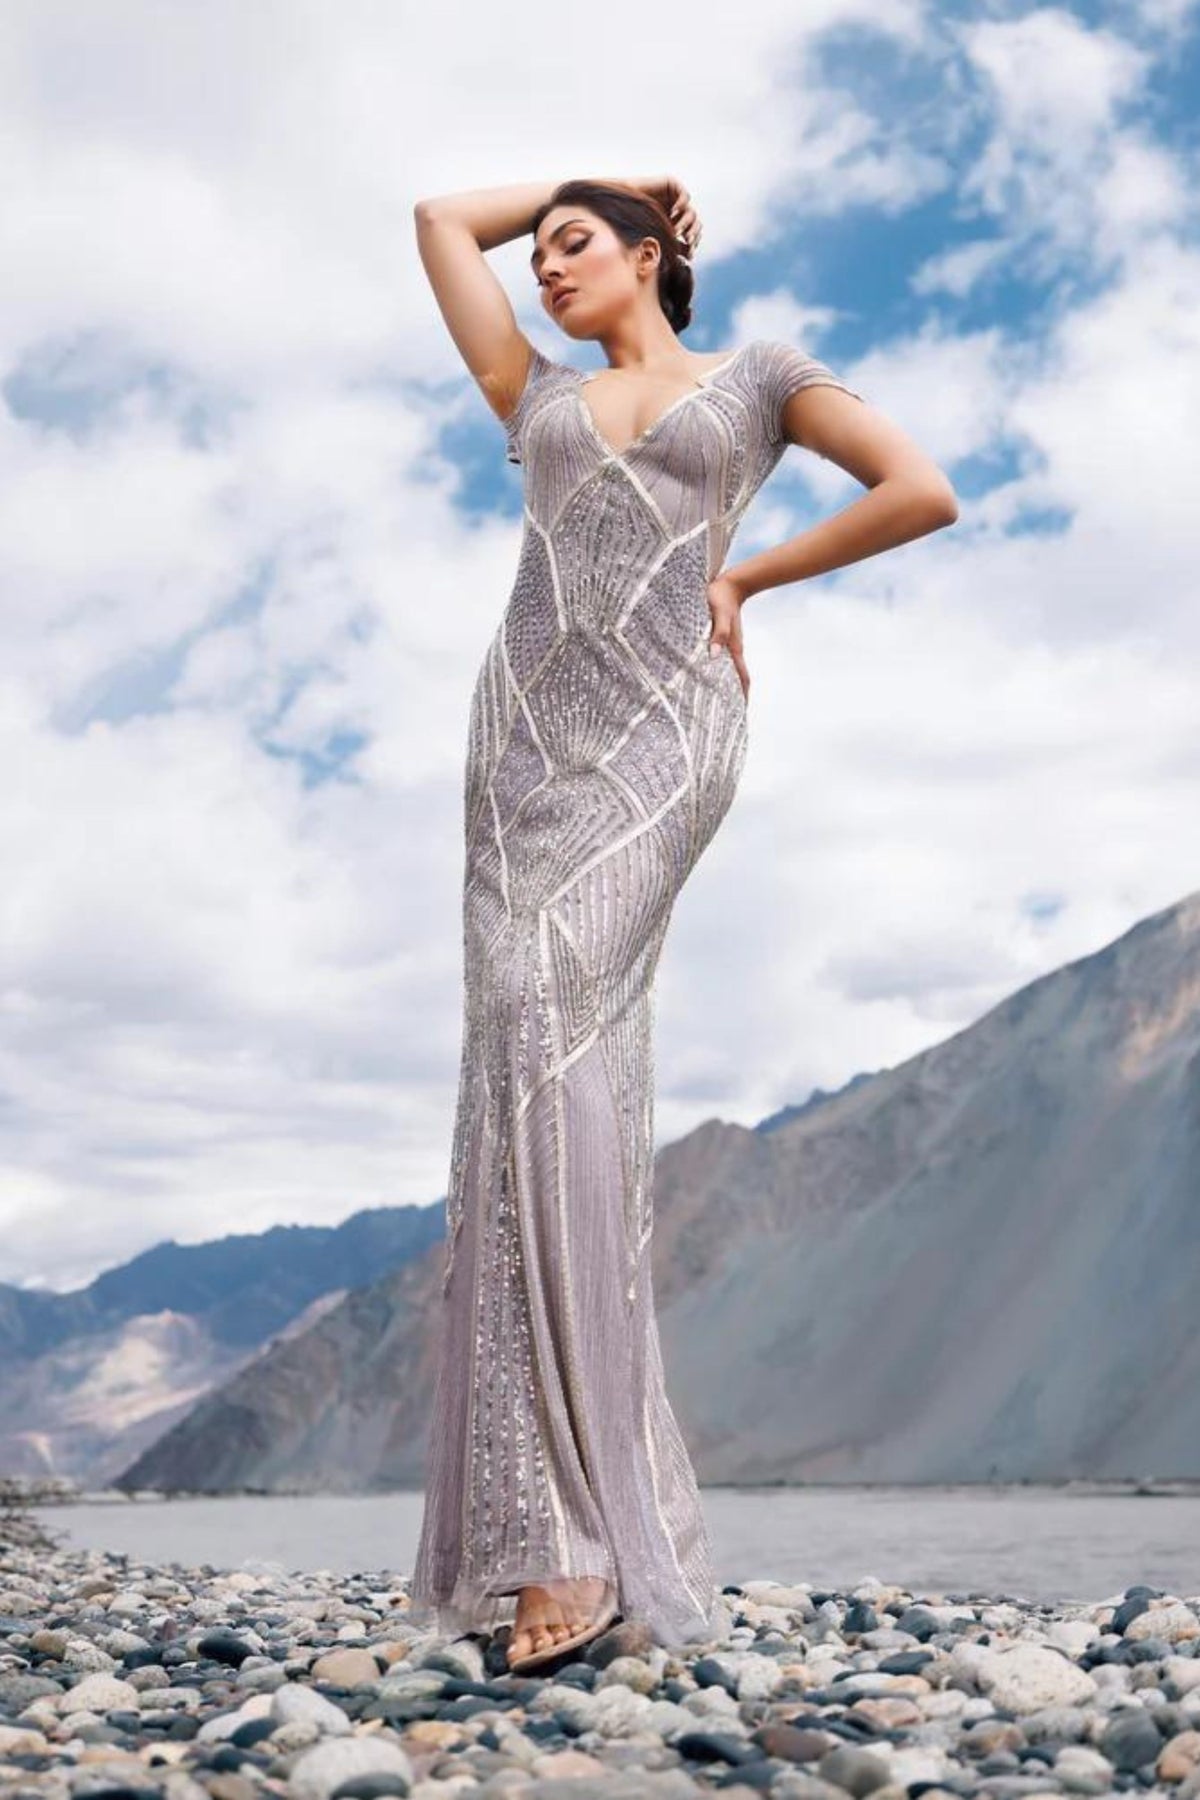 Metallic grey sheath fit gown